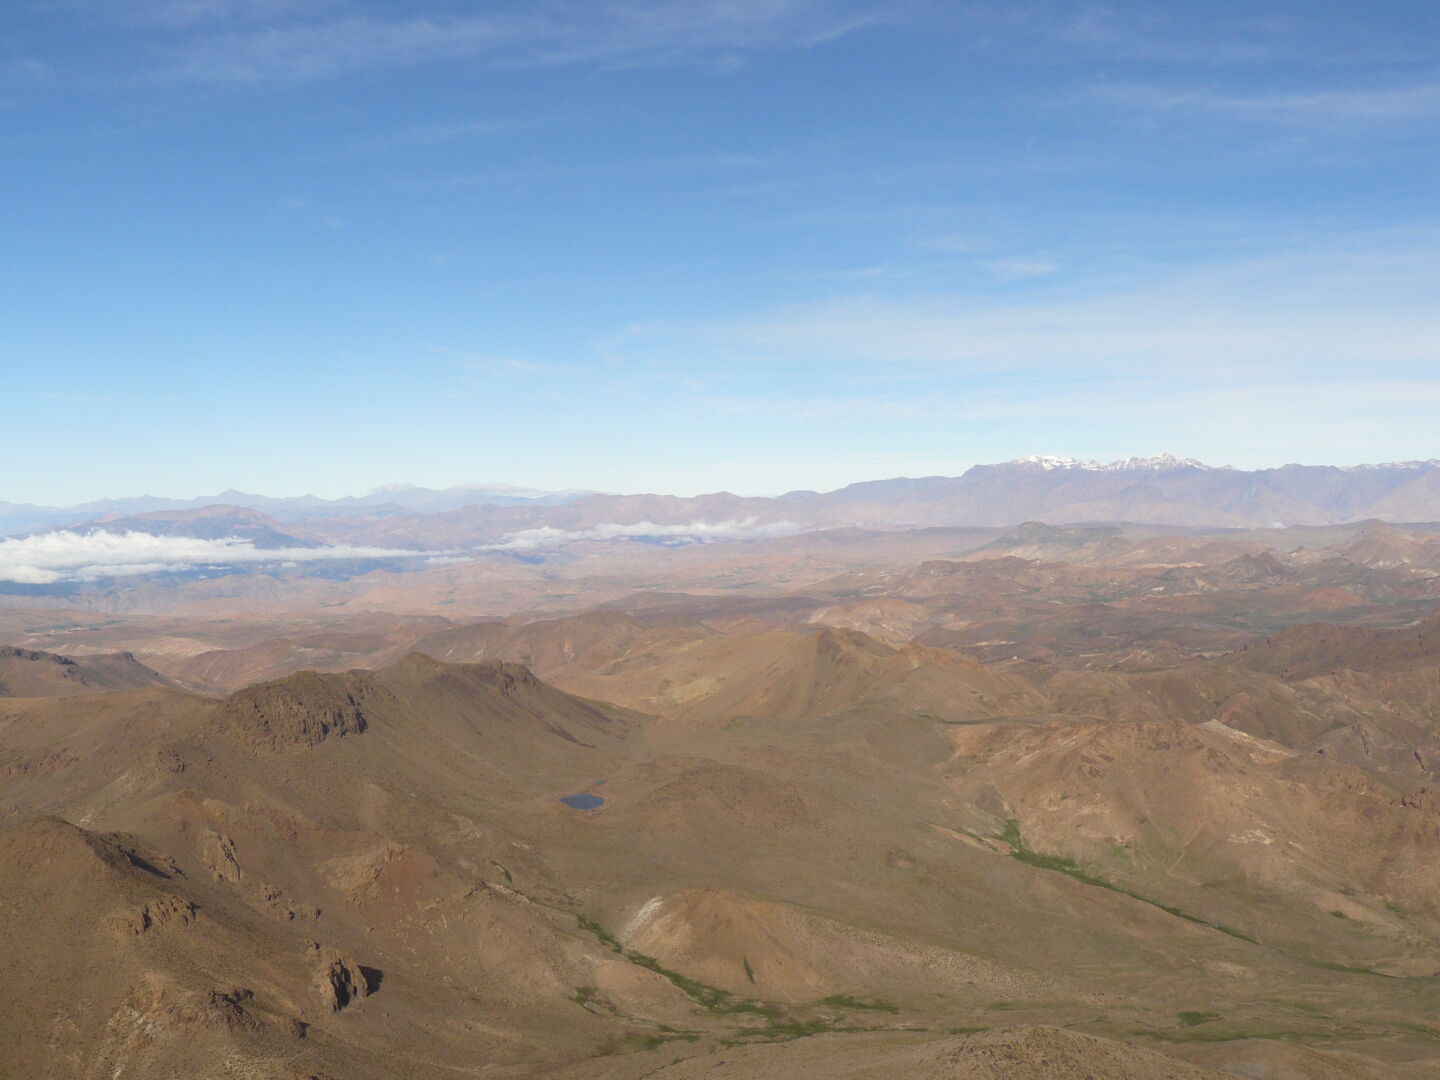 Auf dem Gipfel &mdash; Gipfelpanorama mit Blick auf den Toubkal.